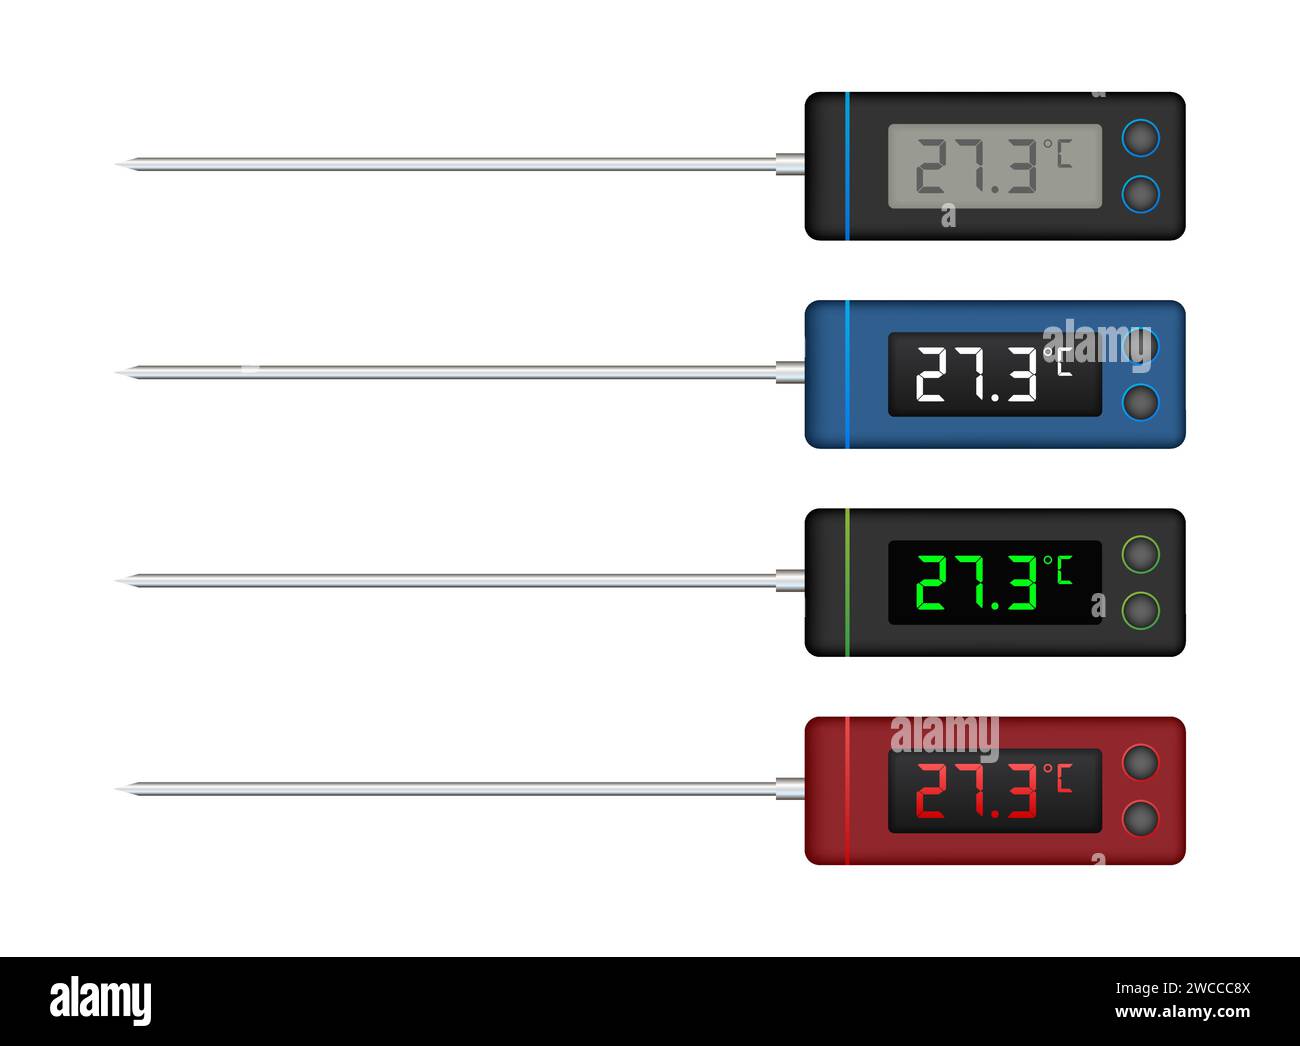 Termometri digitali da cucina con display della temperatura in vari colori, set di illustrazioni vettoriali per uso culinario e culinario Illustrazione Vettoriale